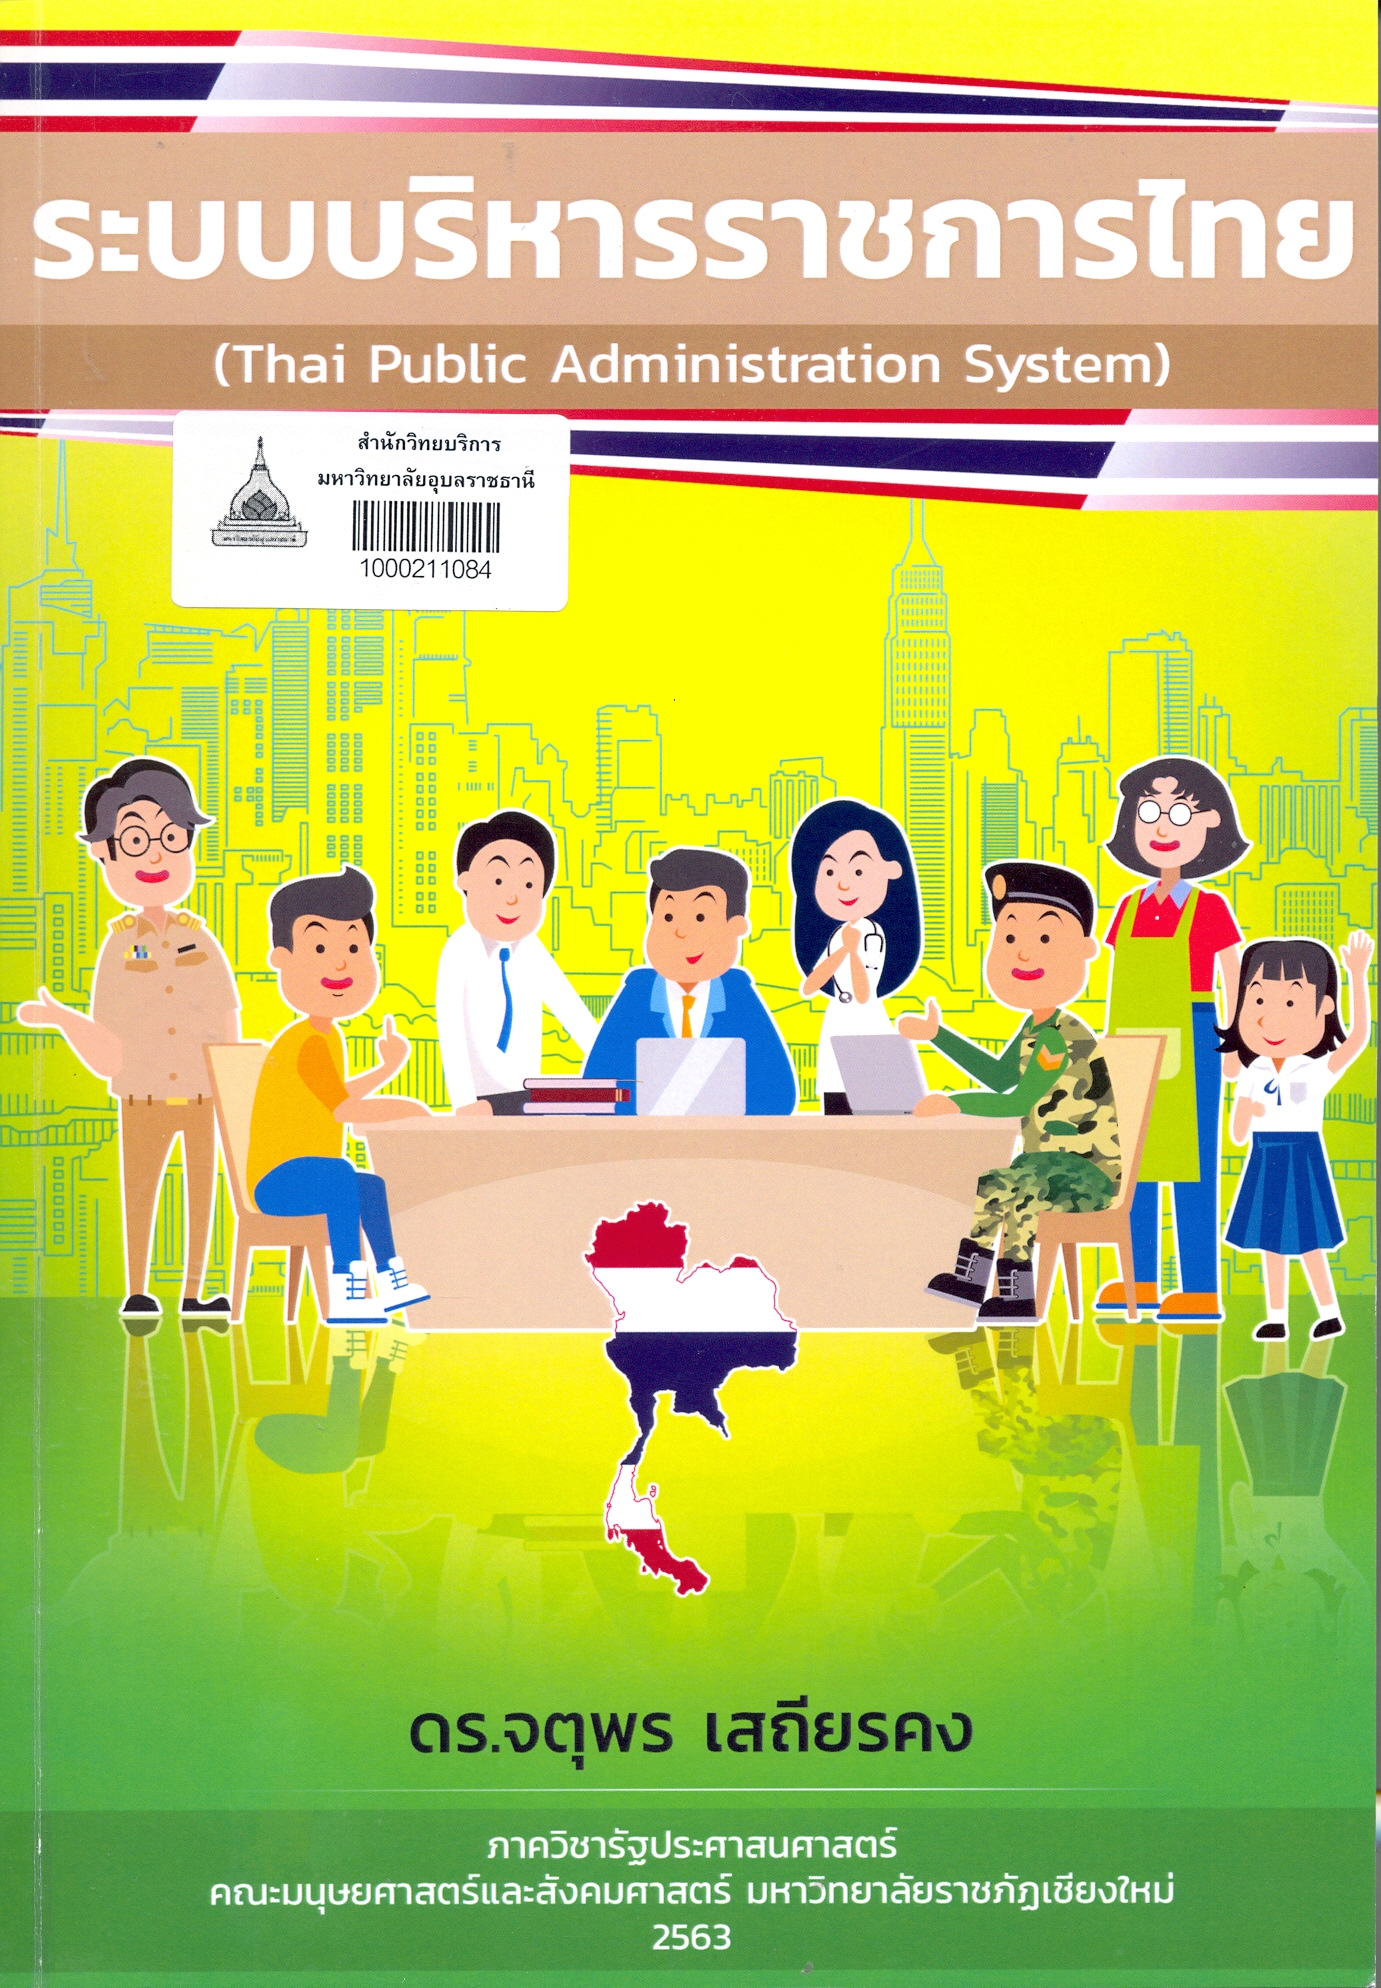 ระบบบริหารราชการไทย